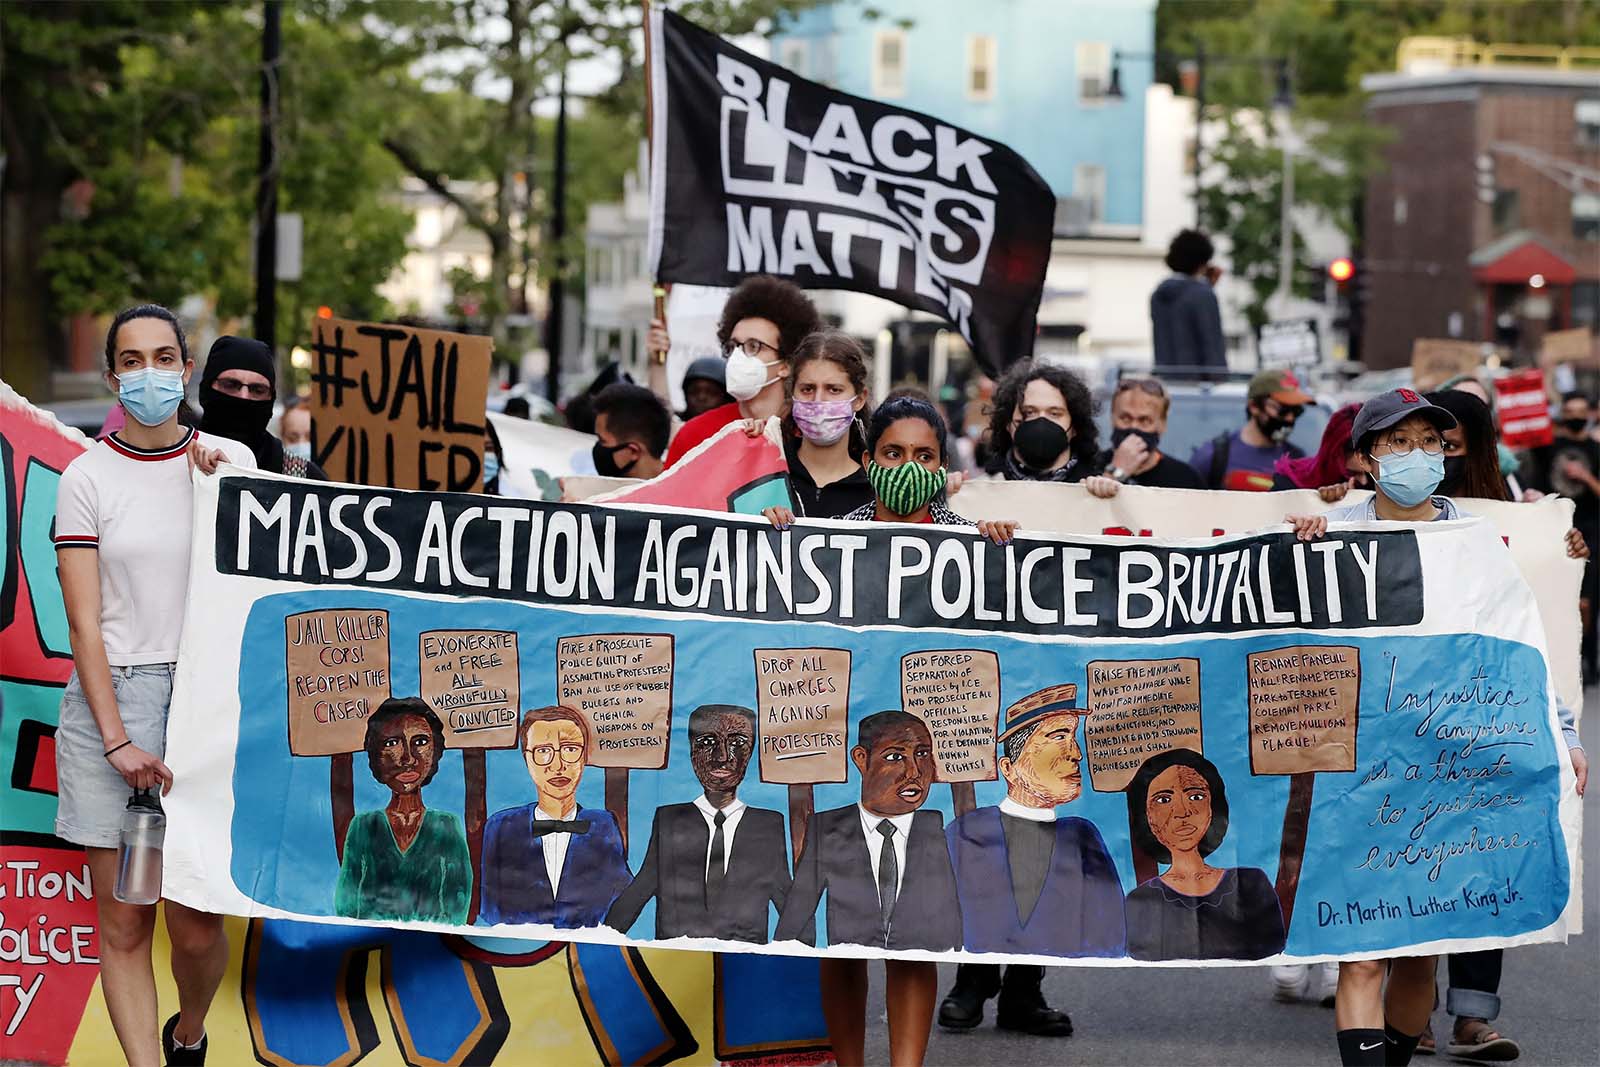 הפגנה בבוסטון לציון שנה למותו של ג'ורג' פלויד (צילום: AP Photo/Michael Dwyer)